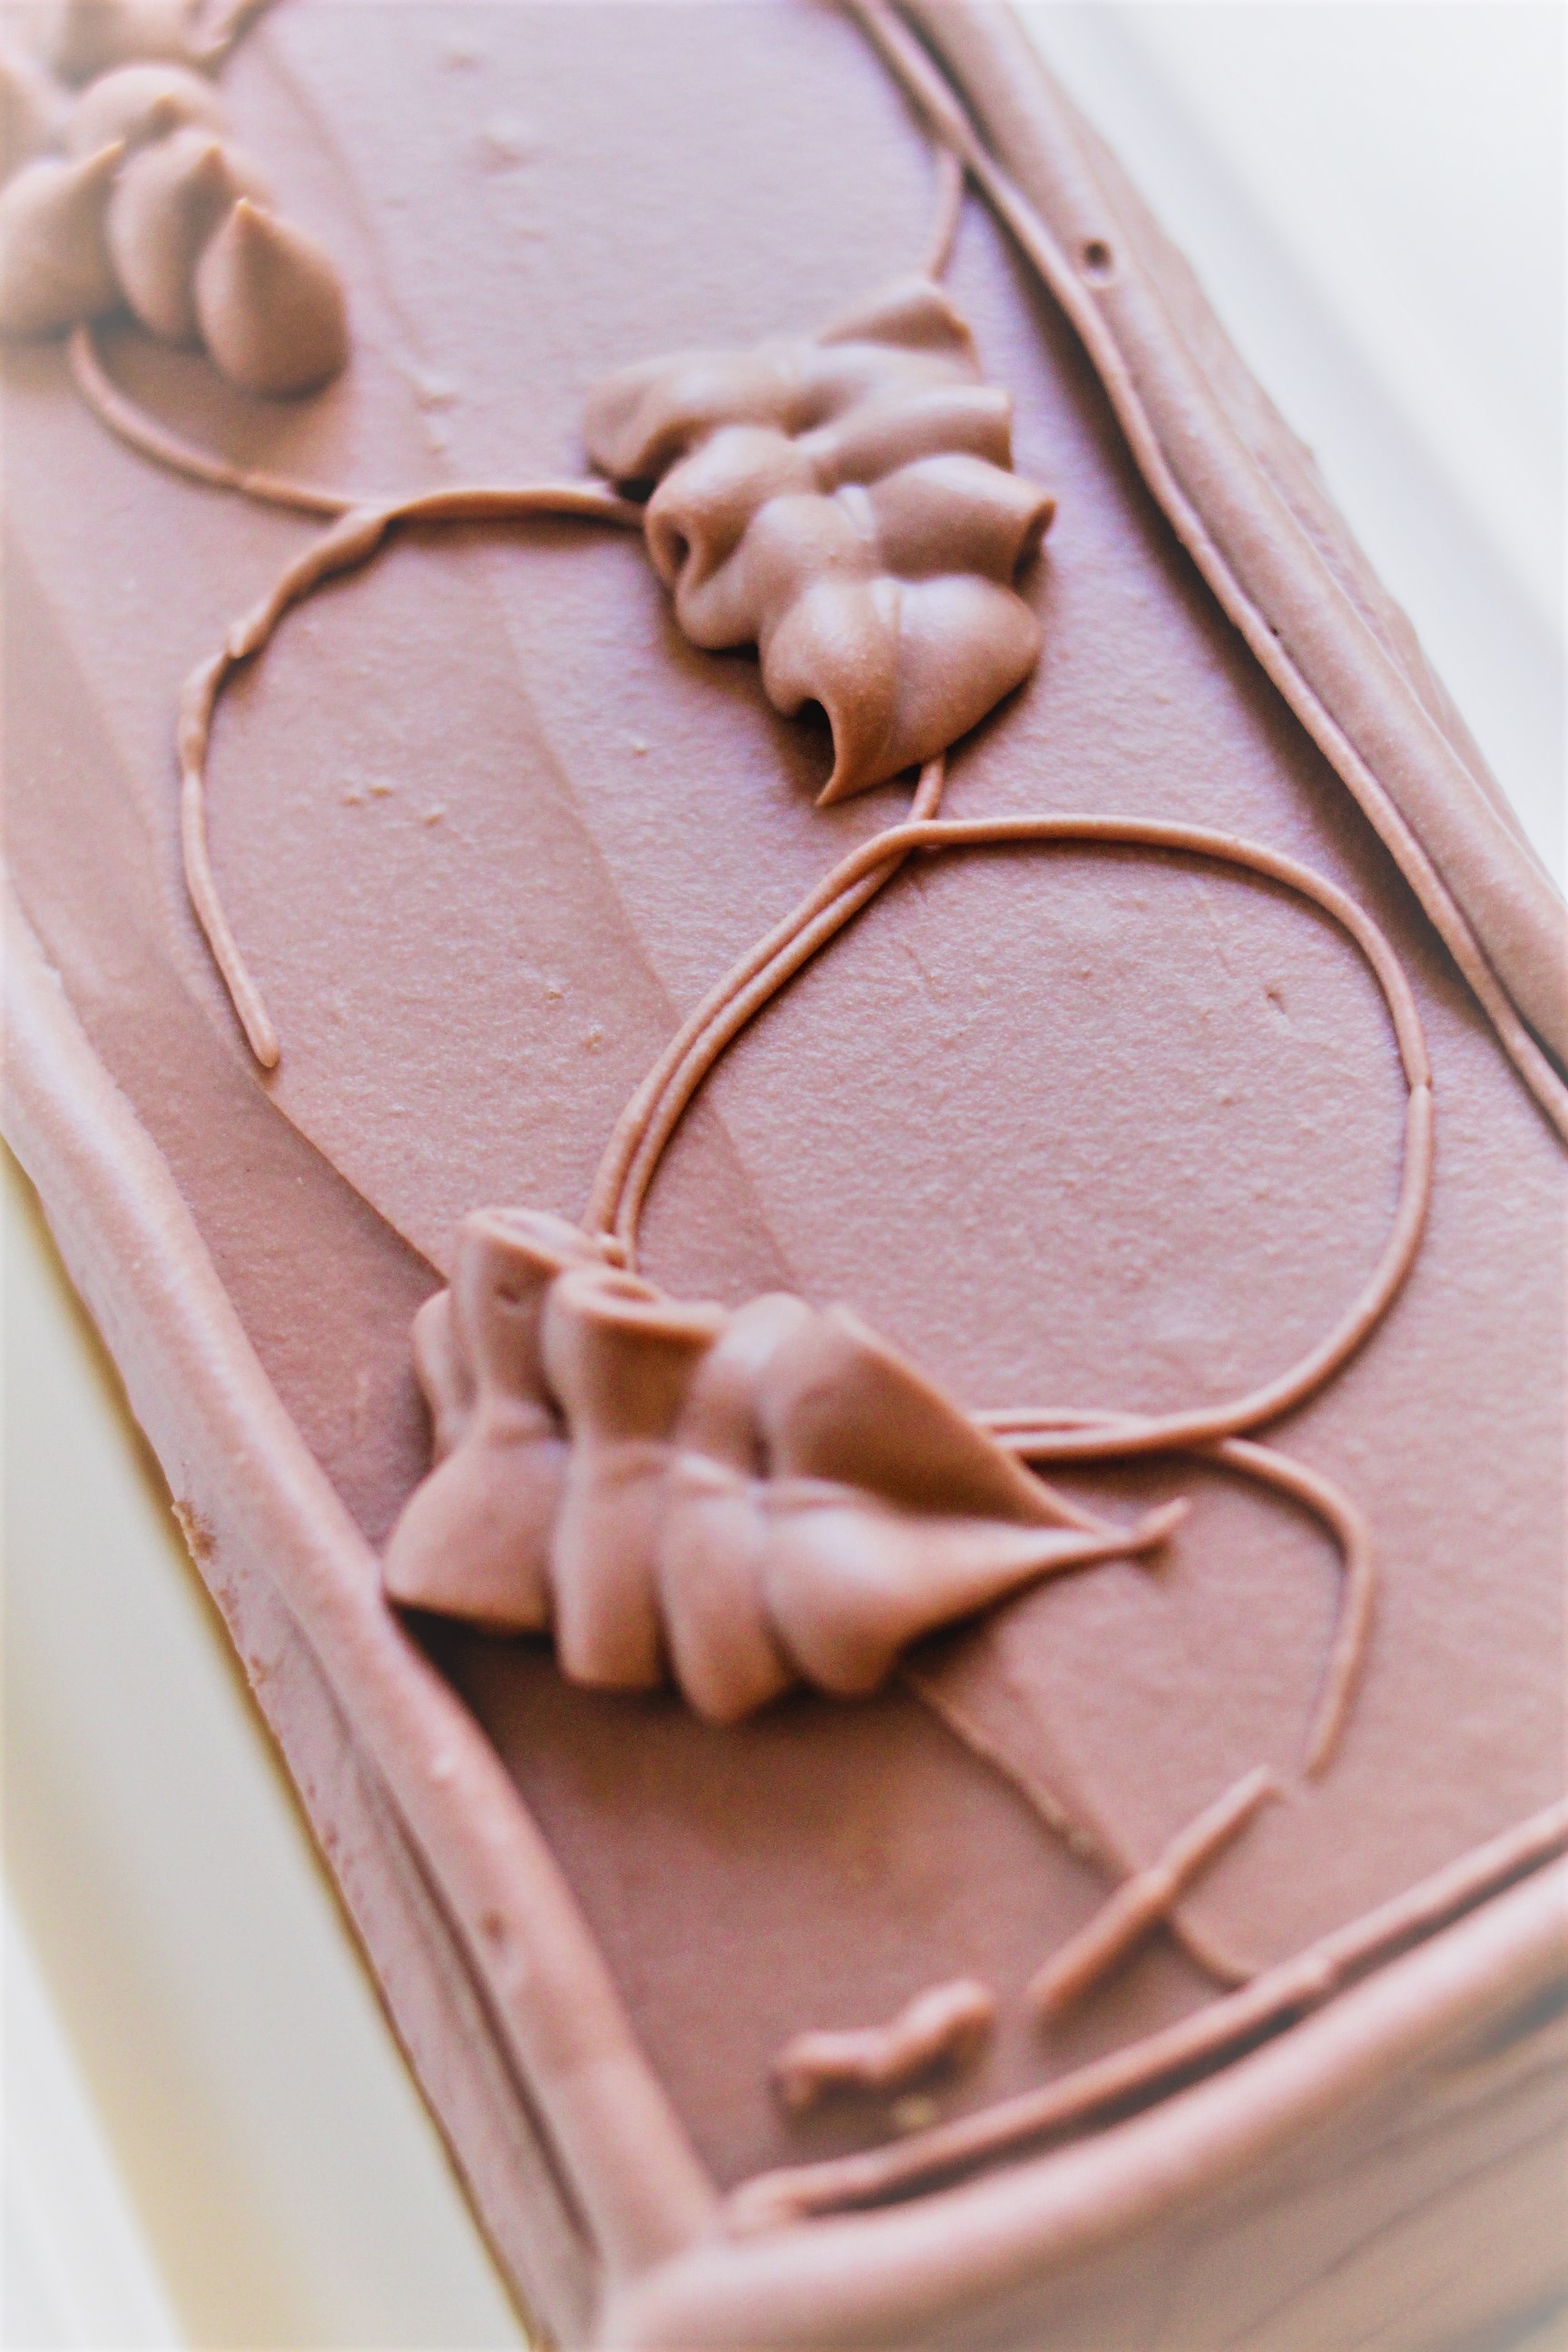 しつこくtops風 クリームの覚え書き付き チョコレートケーキ